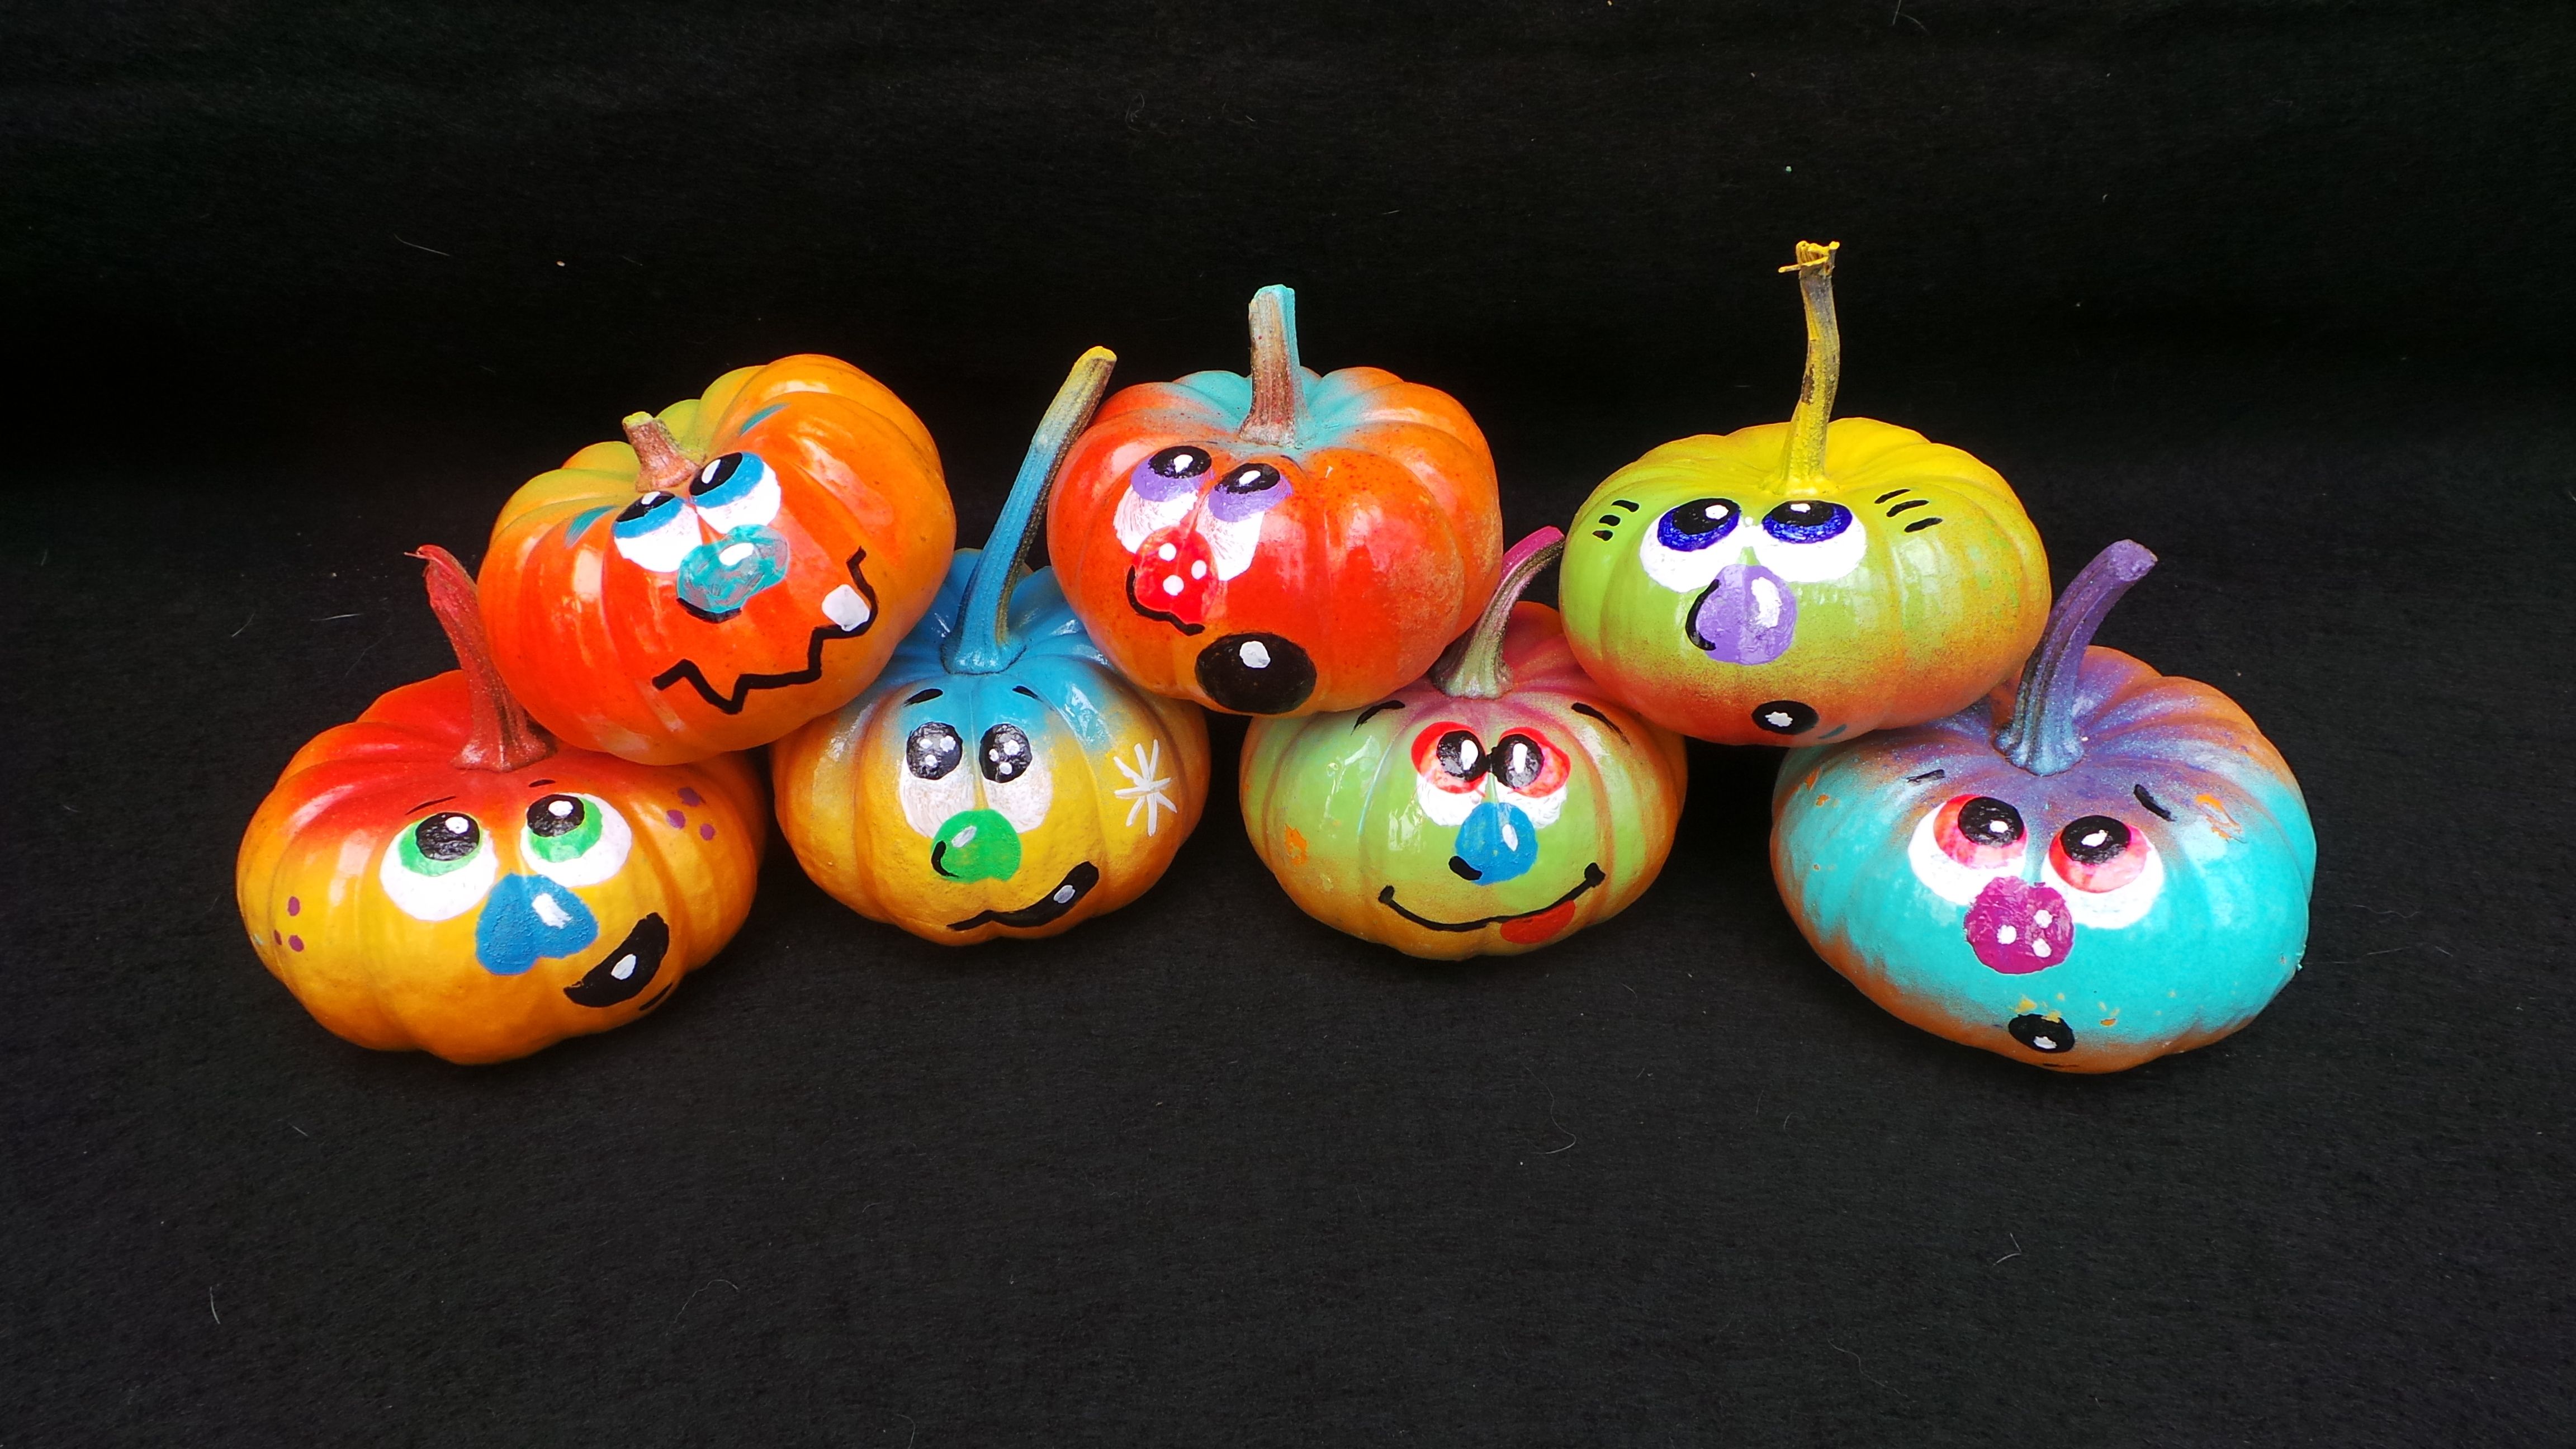 Painted Pumpkins